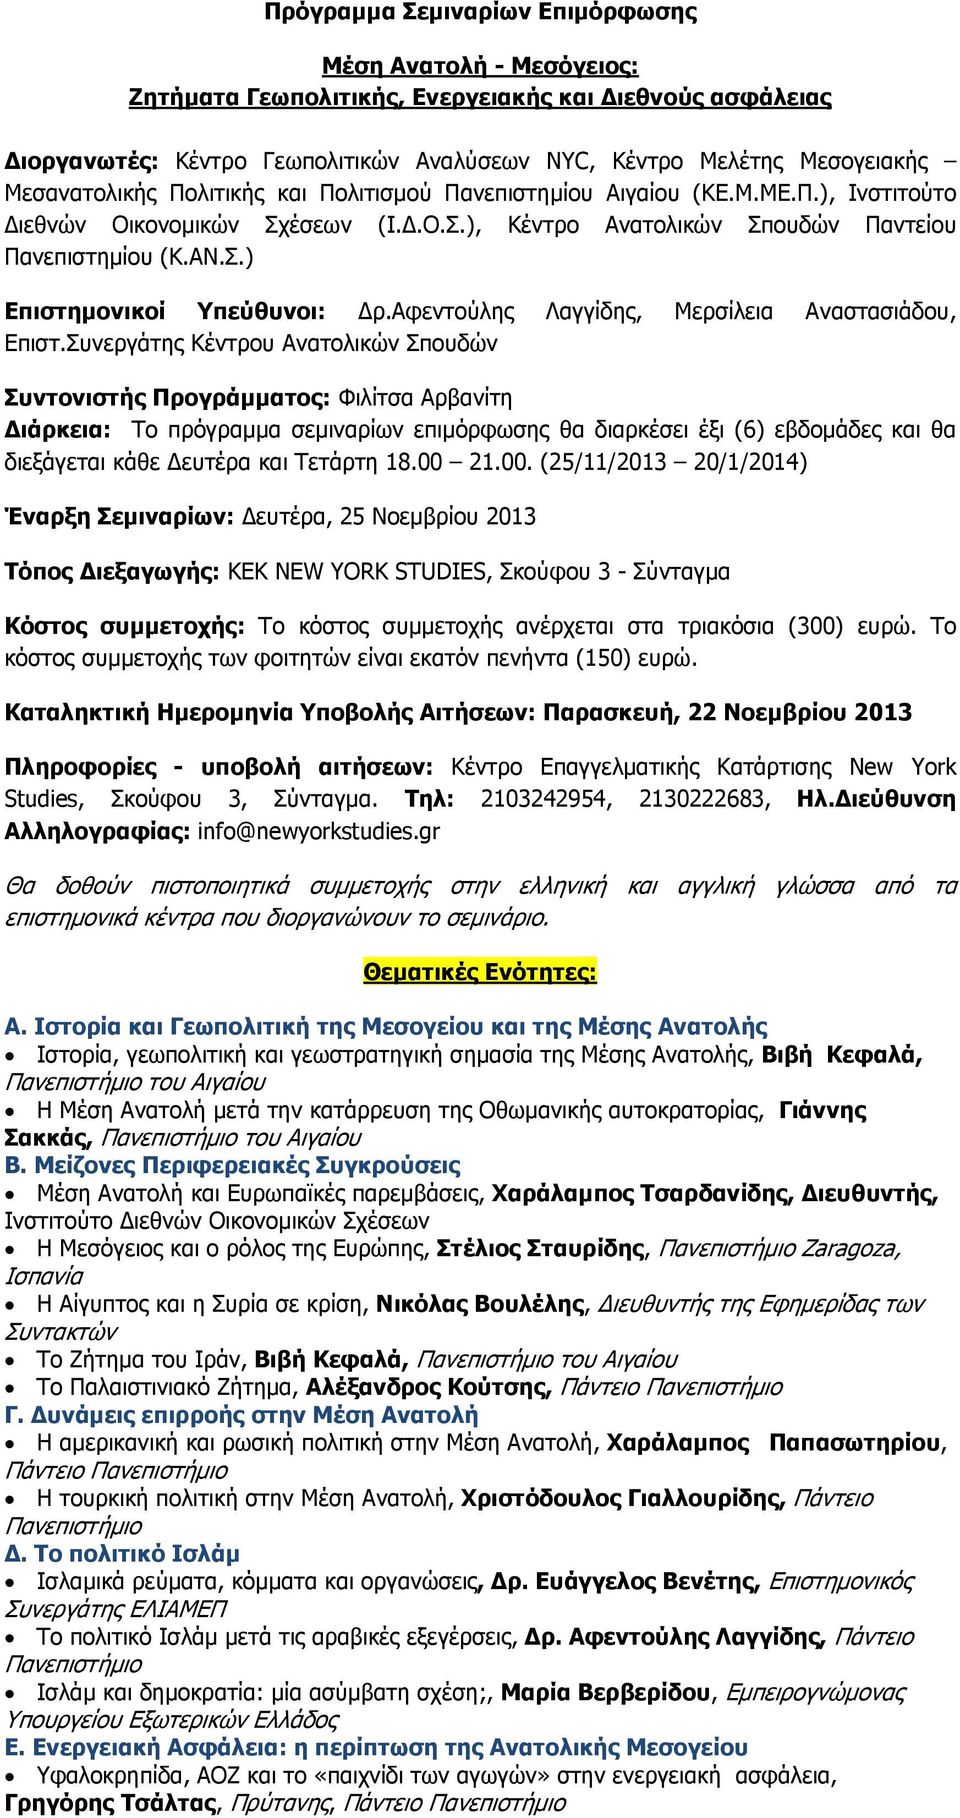 αφεντούλης Λαγγίδης, Μερσίλεια Αναστασιάδου, Επιστ.